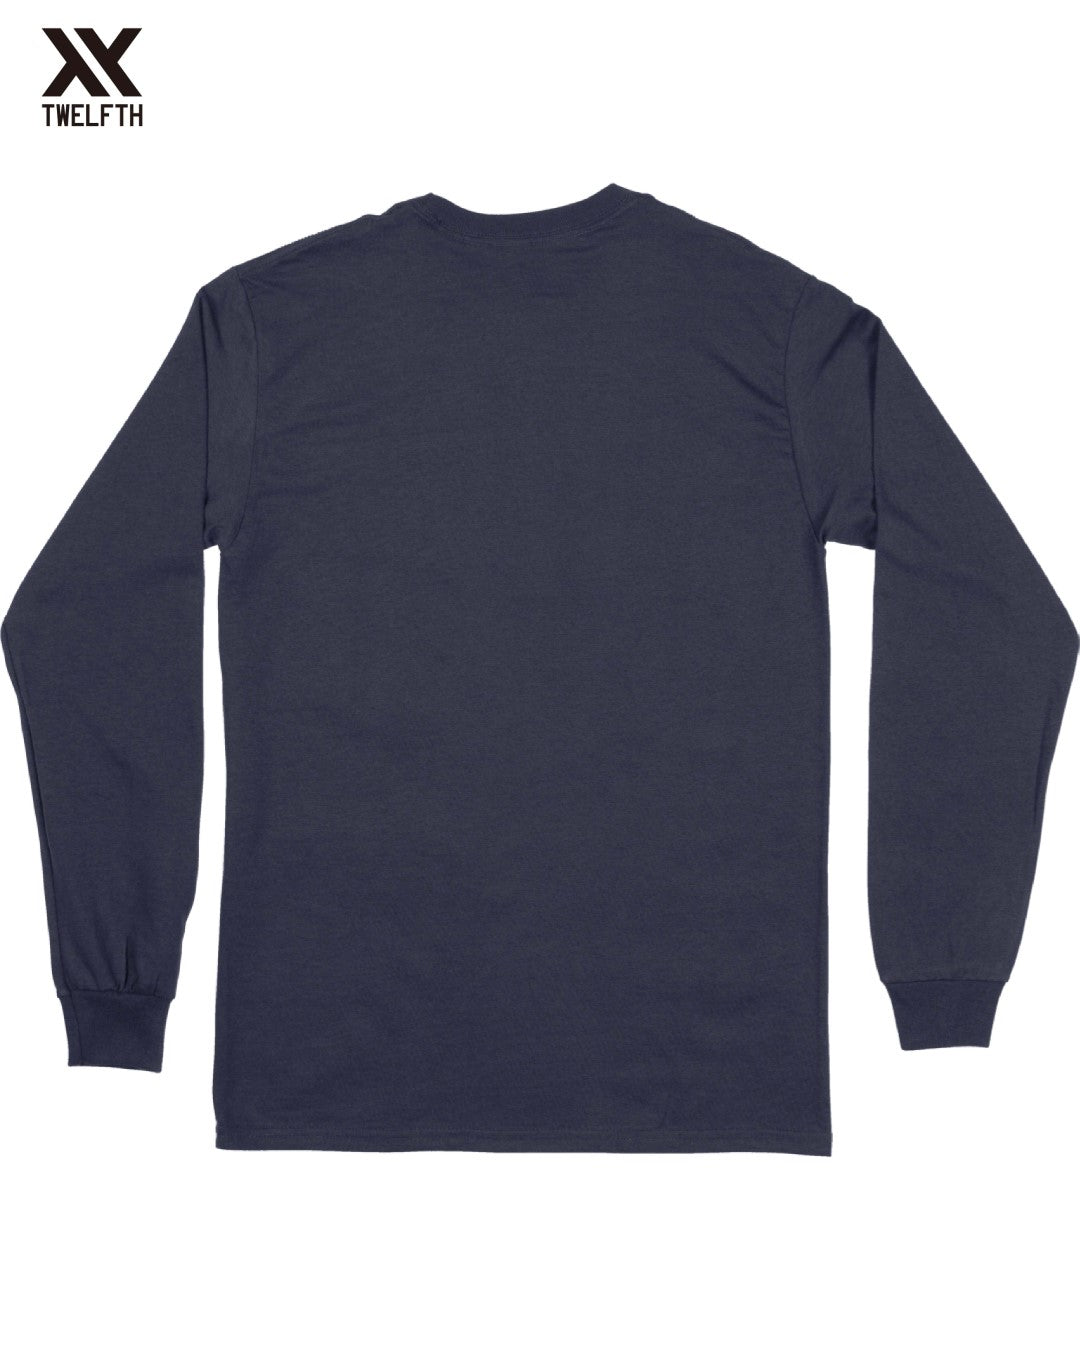 Bordeaux Crest T-Shirt - Mens - Long Sleeve